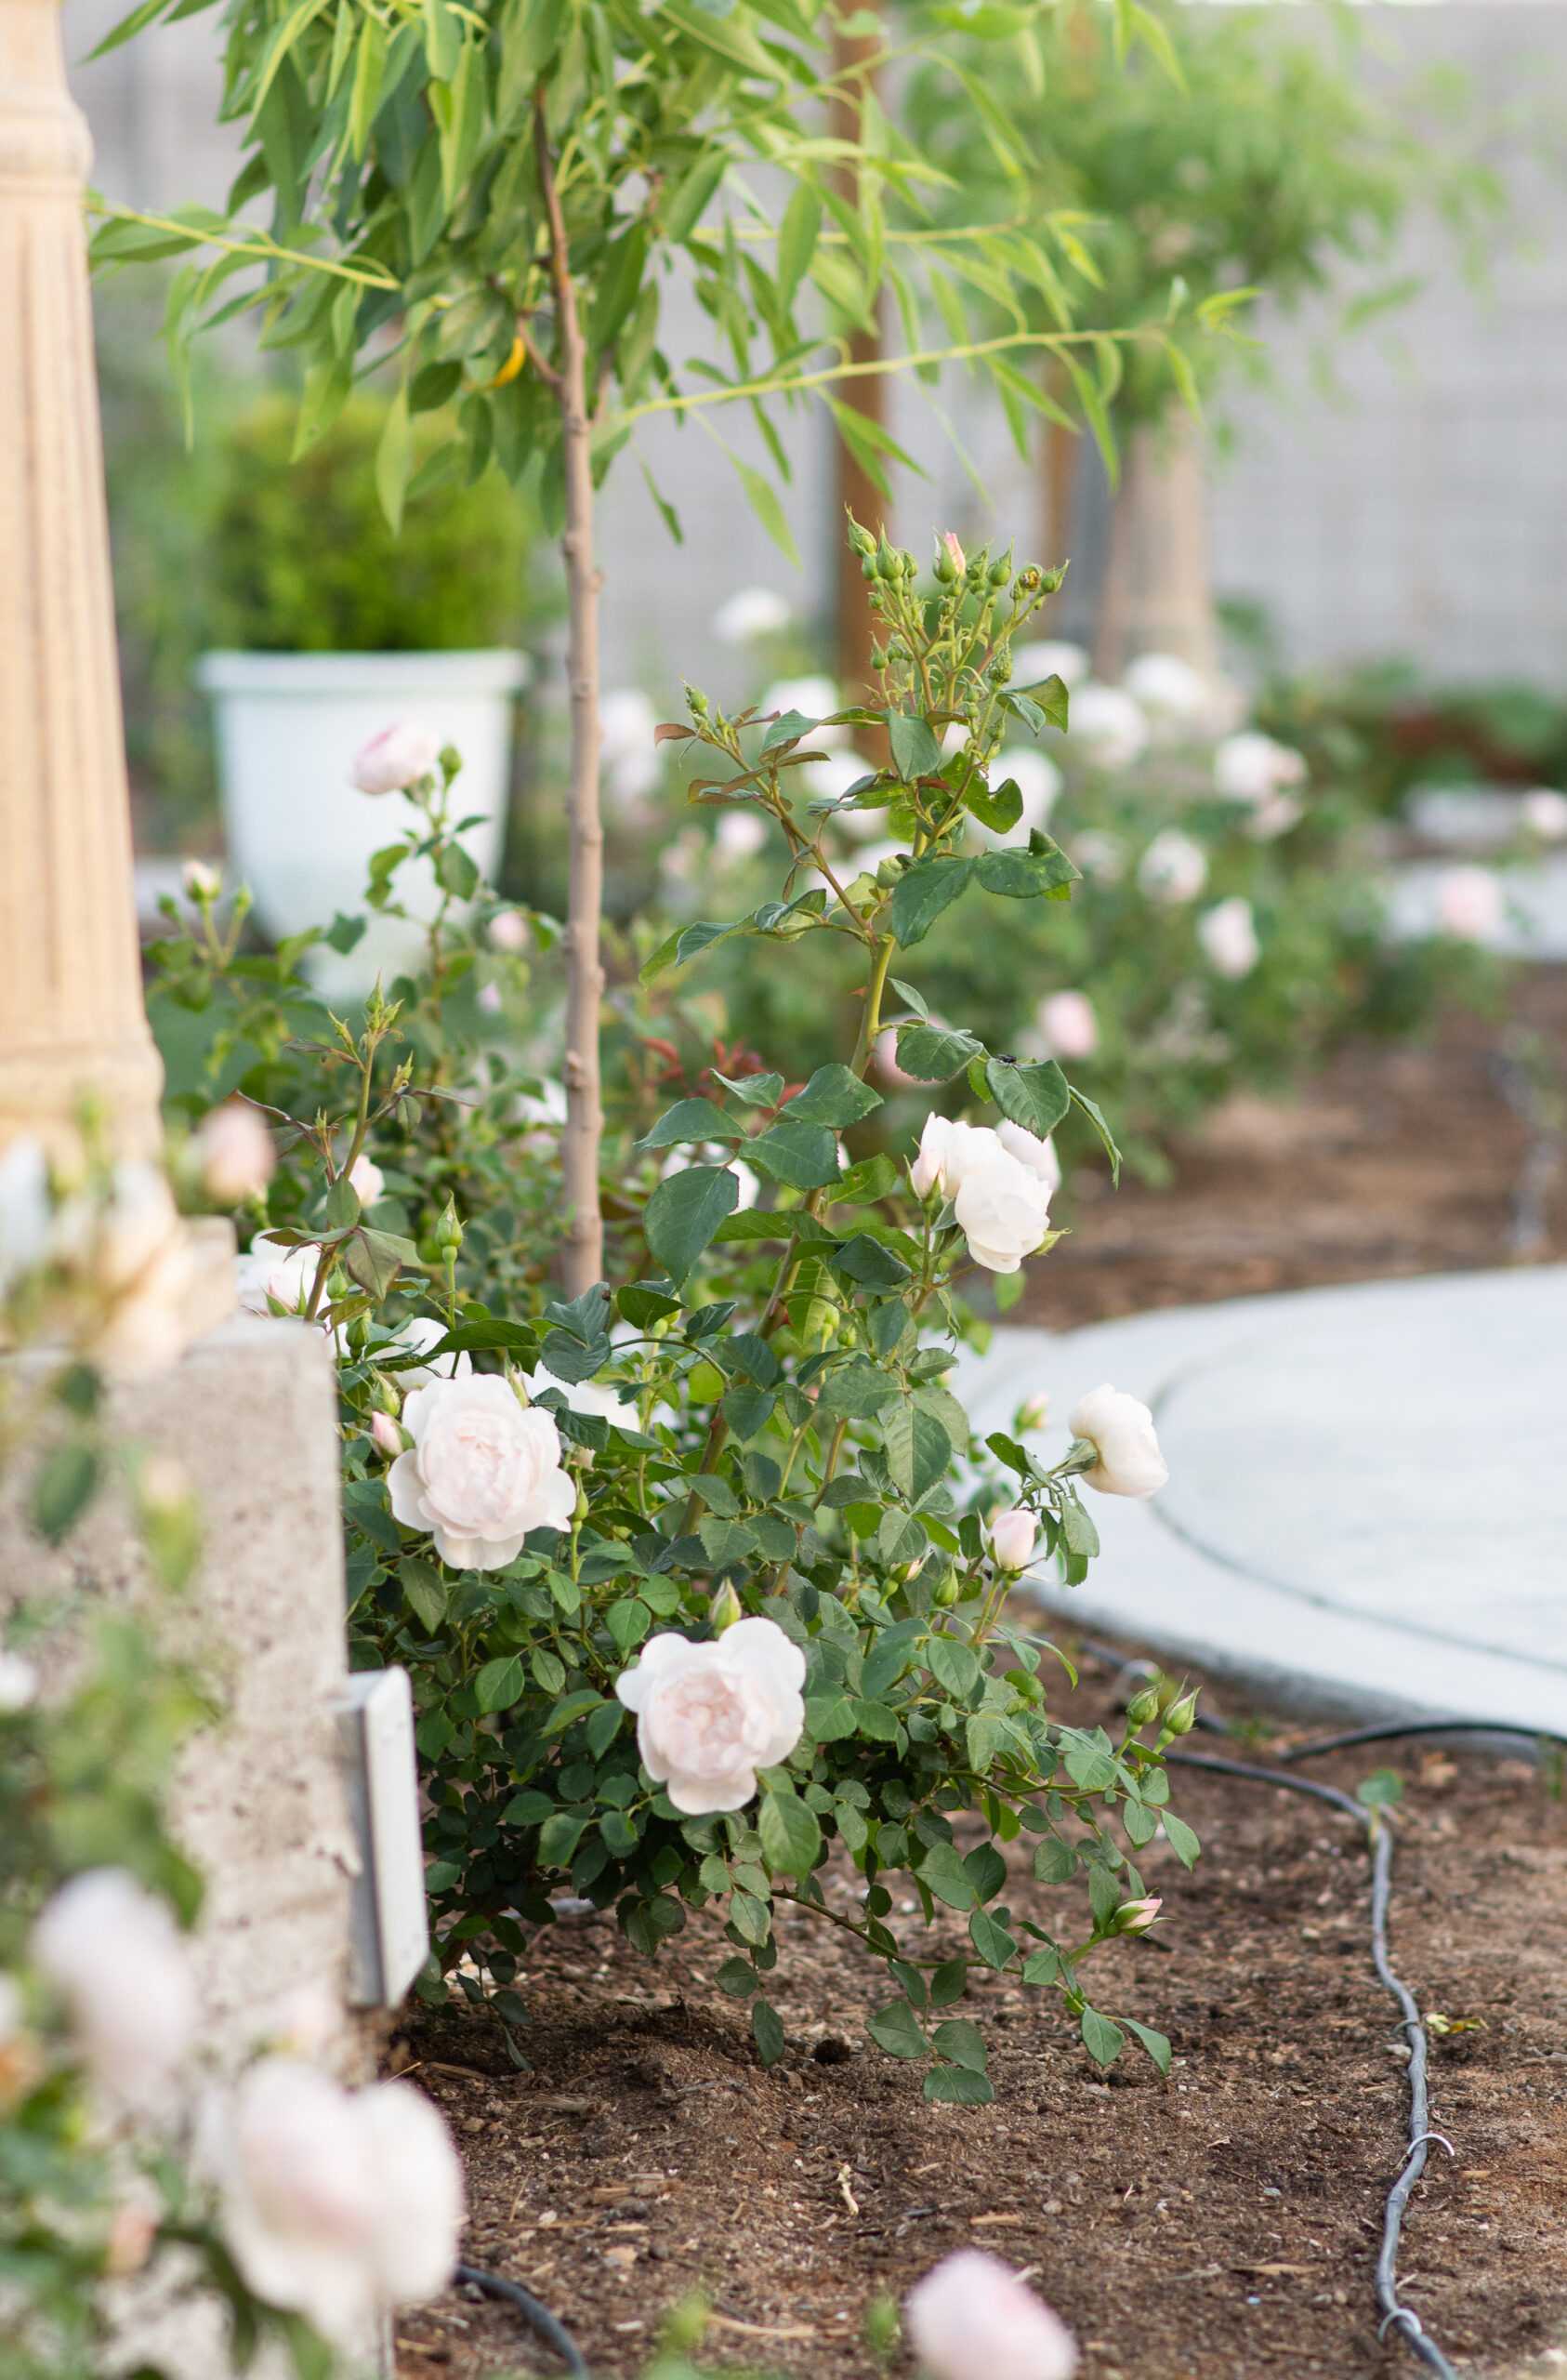 https://theprudenthomemaker.com/wp-content/uploads/2022/04/Garden-Roses-The-Prudent-Homemaker-scaled.jpg